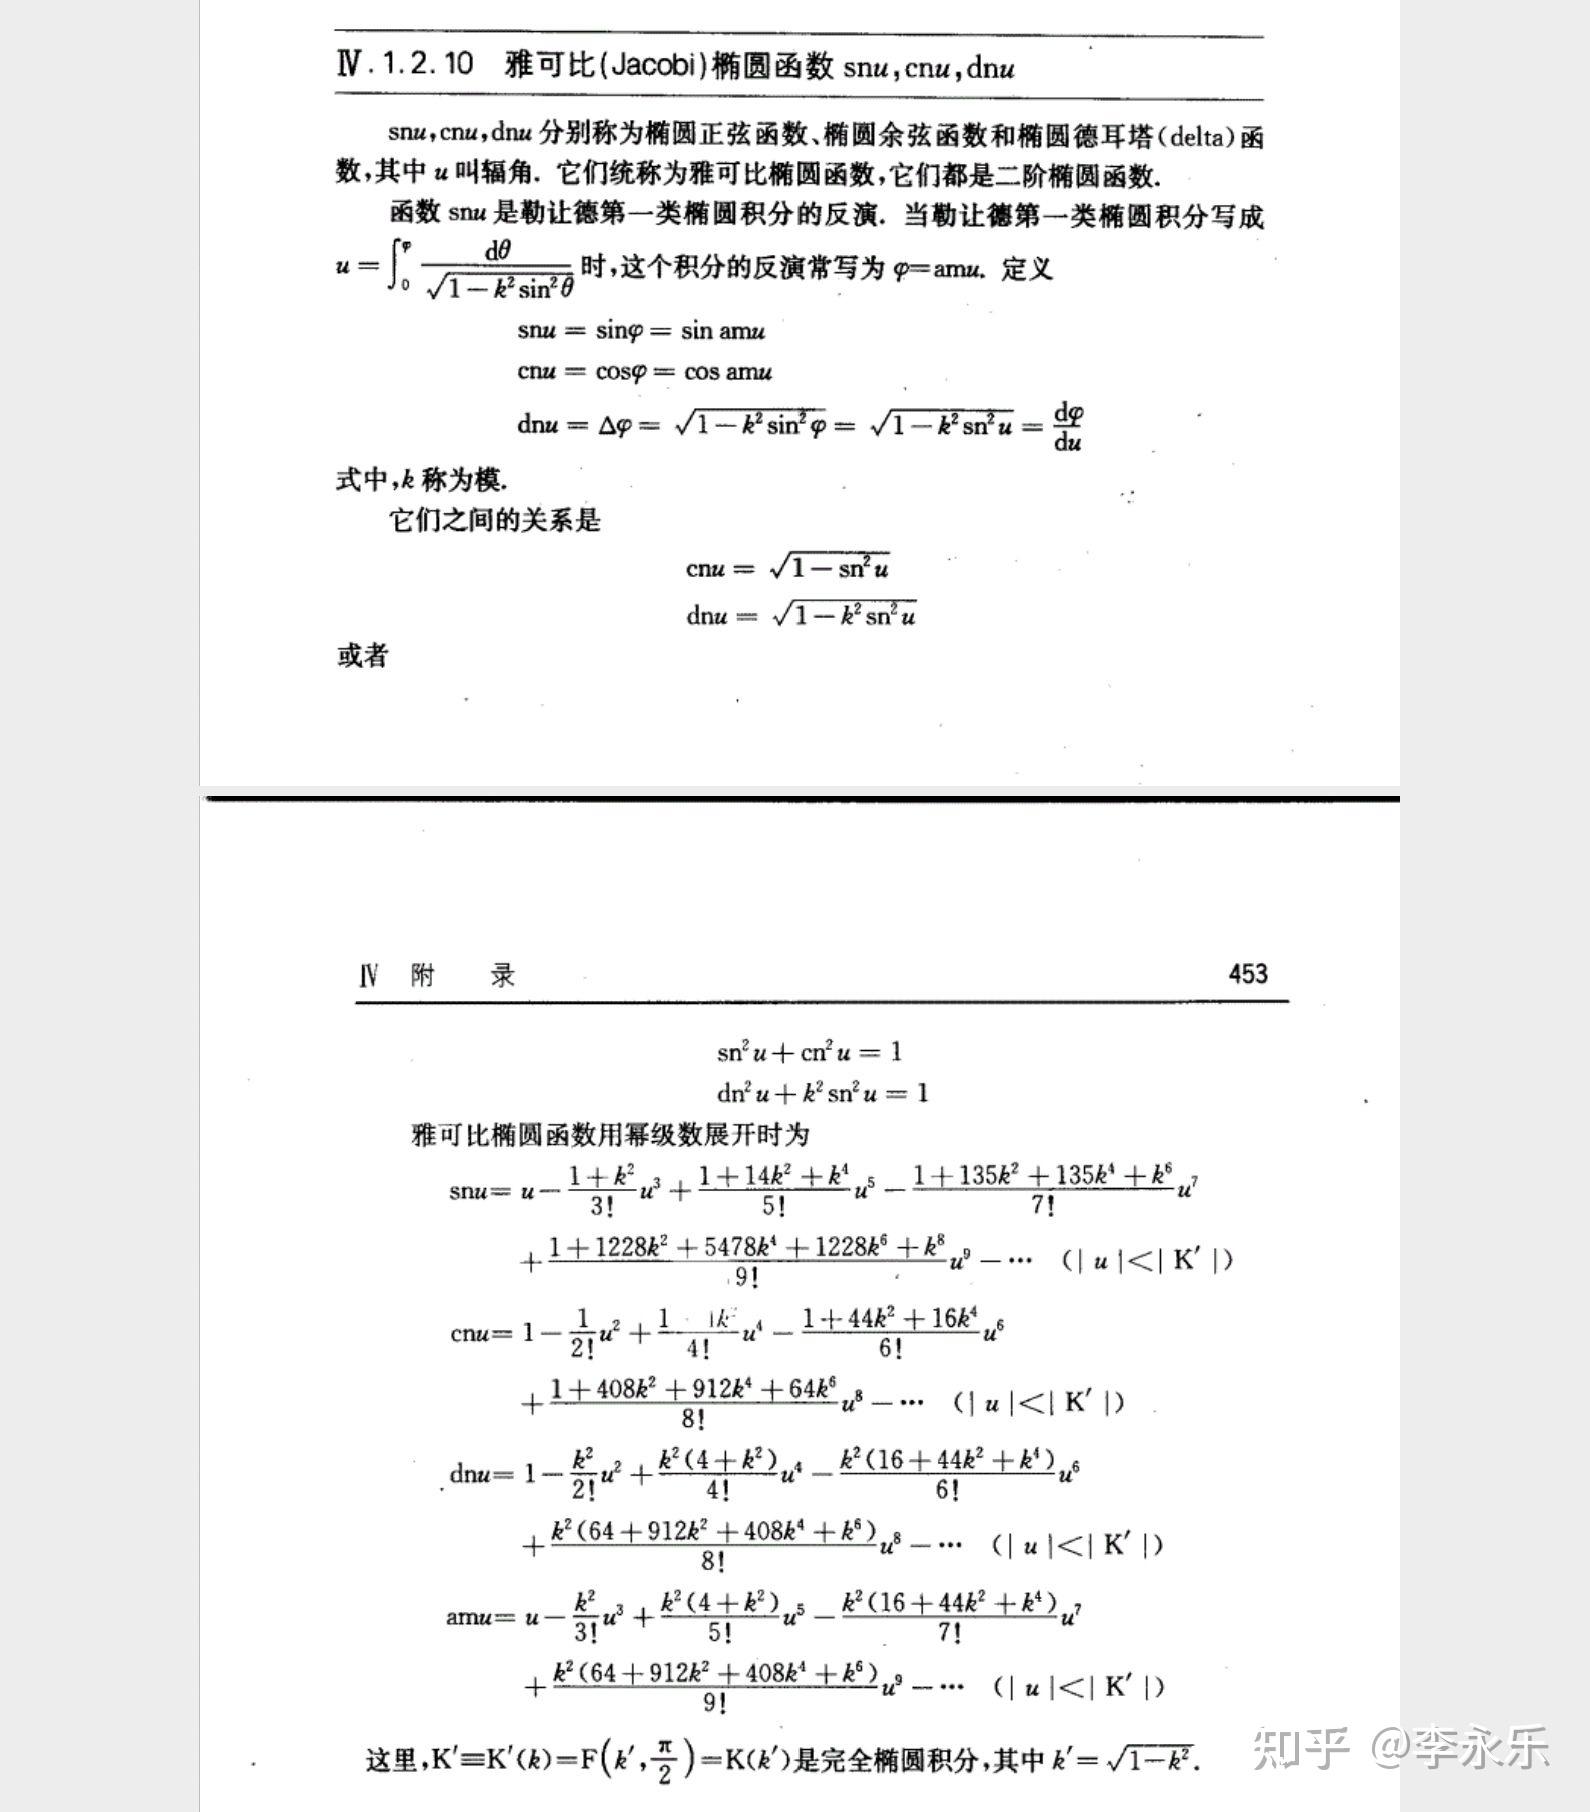 雅可比椭圆函数的一些公式